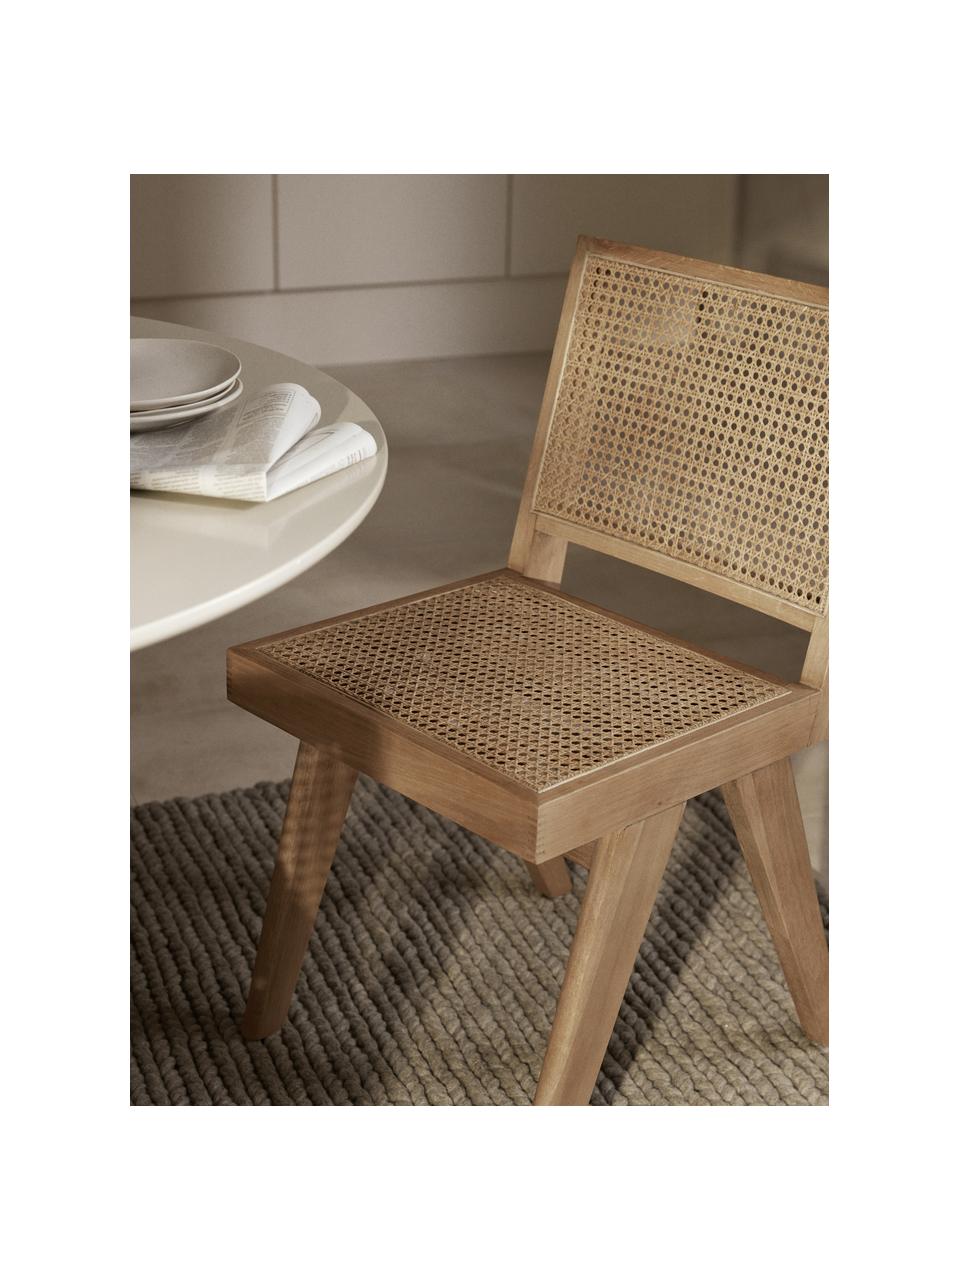 Chaise en bois et cannage Sissi, Bois de chêne clair, cannage beige clair, larg. 46 x prof. 56 cm